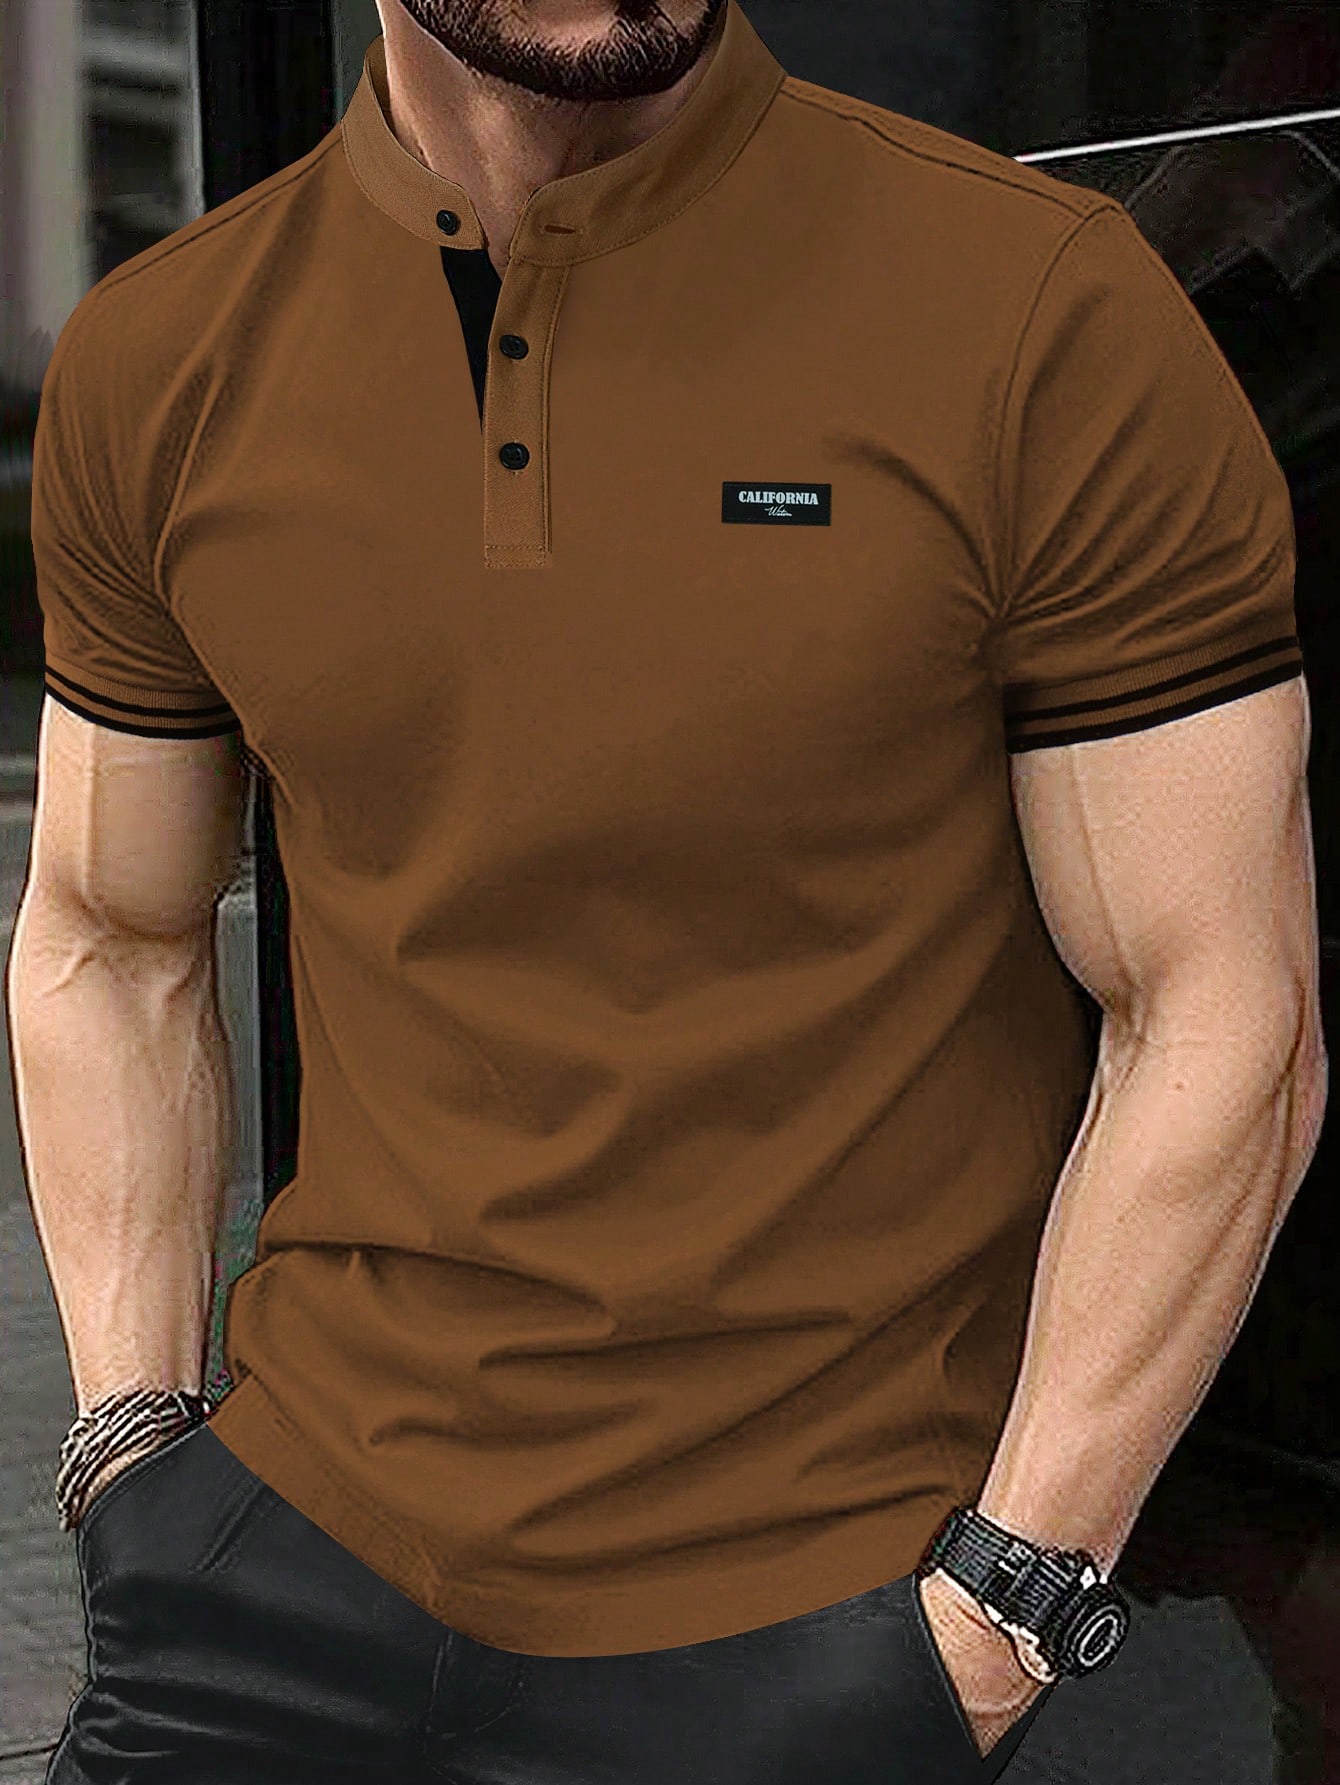 Мужская рубашка-поло с коротким рукавом и планкой на пуговицах Manfinity Homme, коричневый рубашка мужская с клетчатым принтом гавайская блуза с воротником стойкой короткими рукавами на пуговицах свободная повседневная одежда